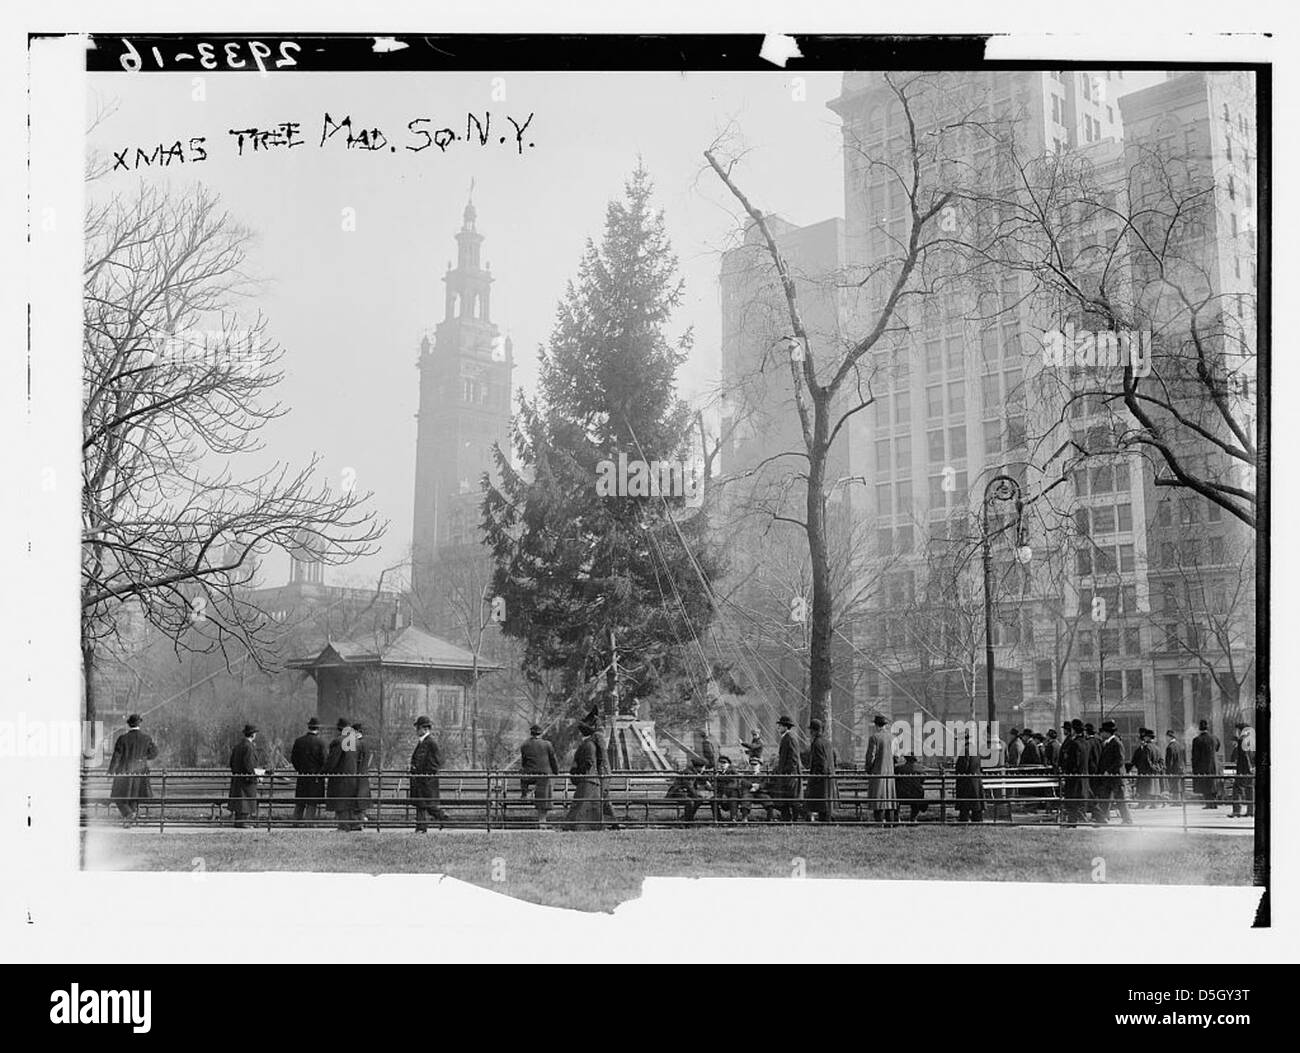 Xmas tree - Madison Sq. N.Y. (LOC) Stock Photo